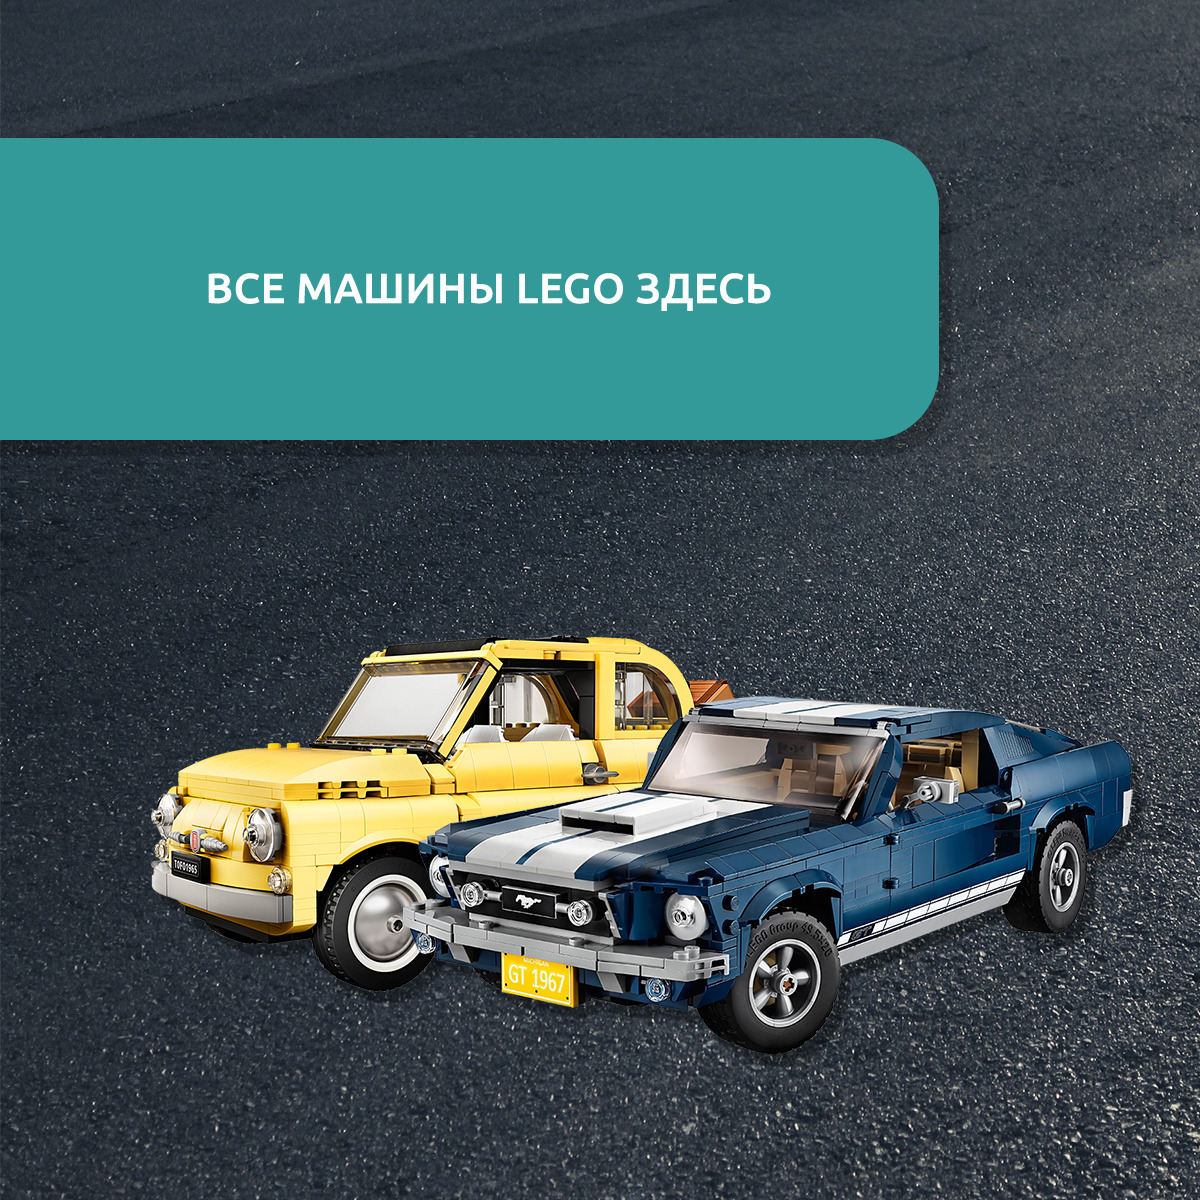 LEGO машины